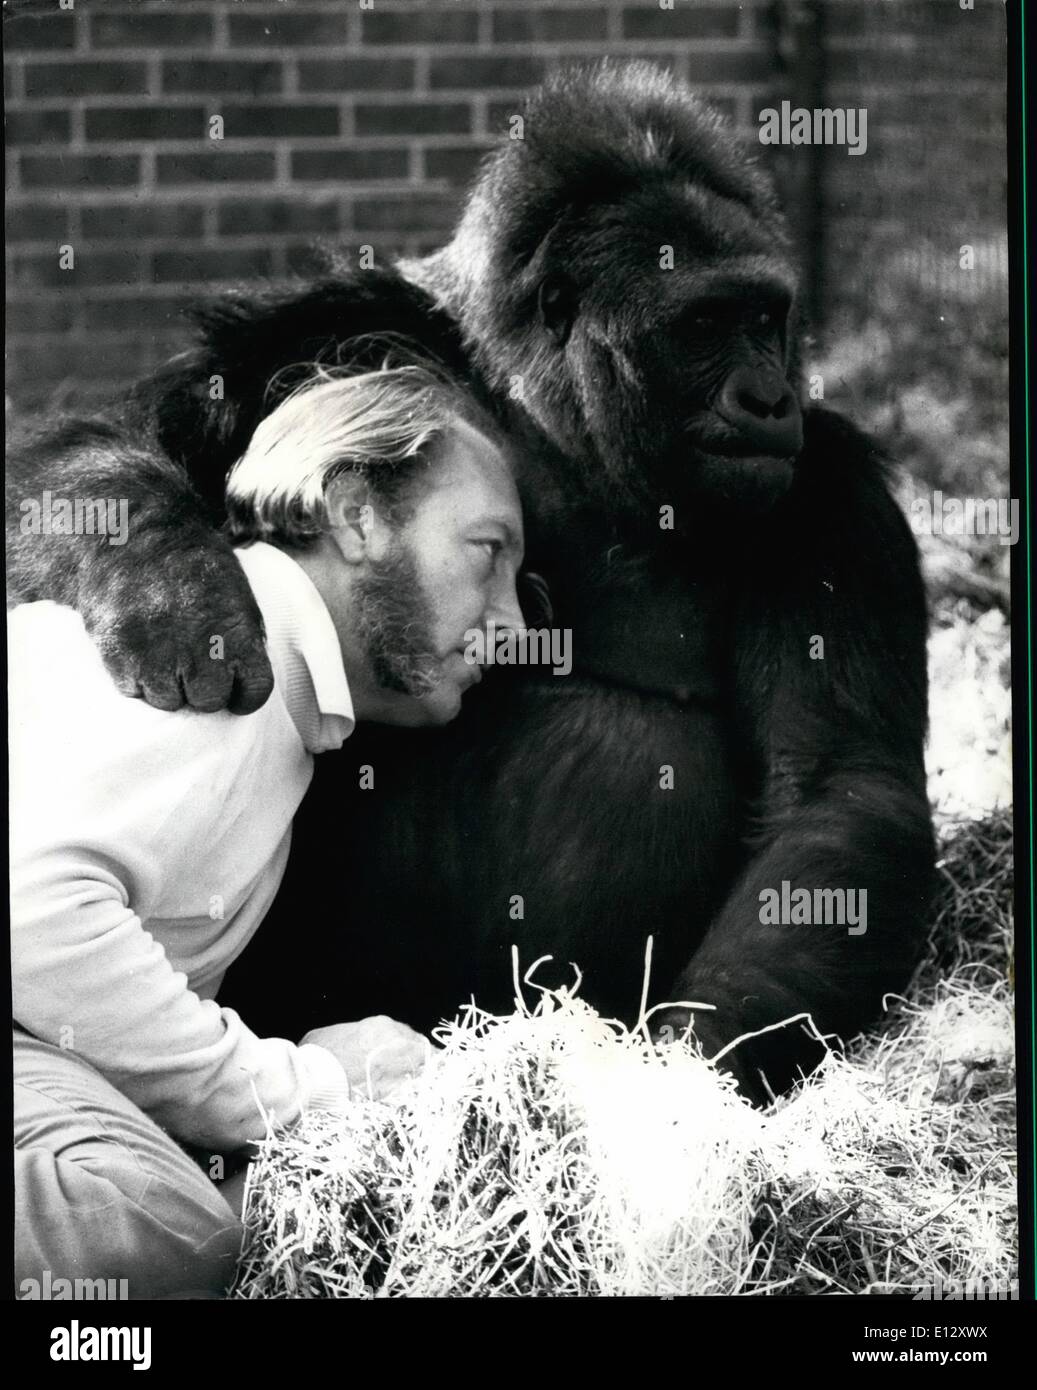 25 février 2012 - C'est comme si John Aspinall a une façon avec les animaux. Même ce gorille pourrait s'il voulait être vraiment dangereux mais il met un bras autour de son maître. Banque D'Images